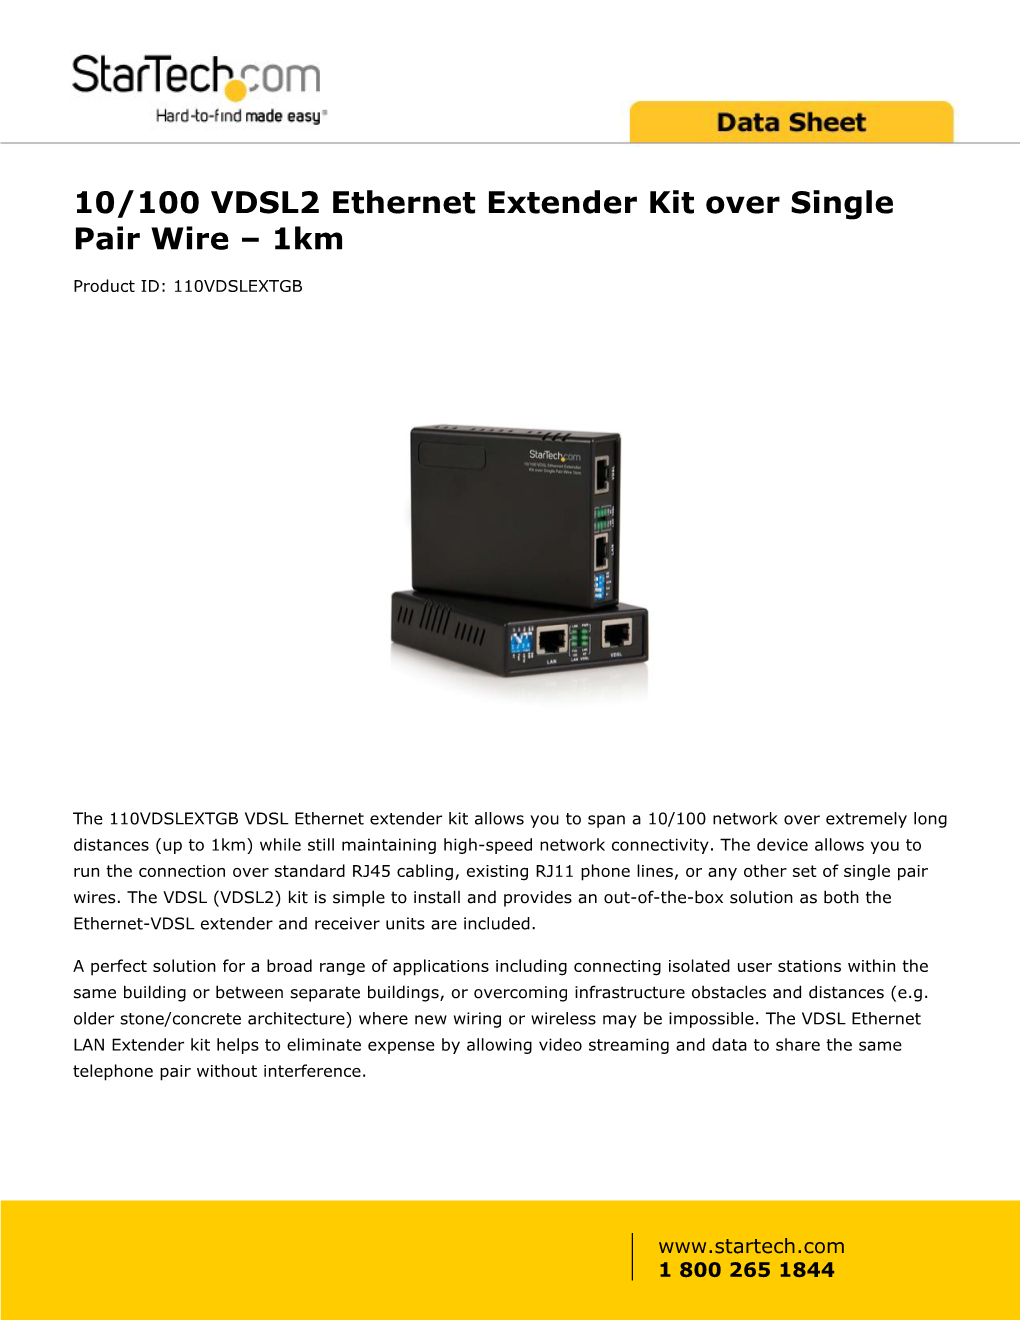 10/100 VDSL2 Ethernet Extender Kit Over Single Pair Wire – 1Km